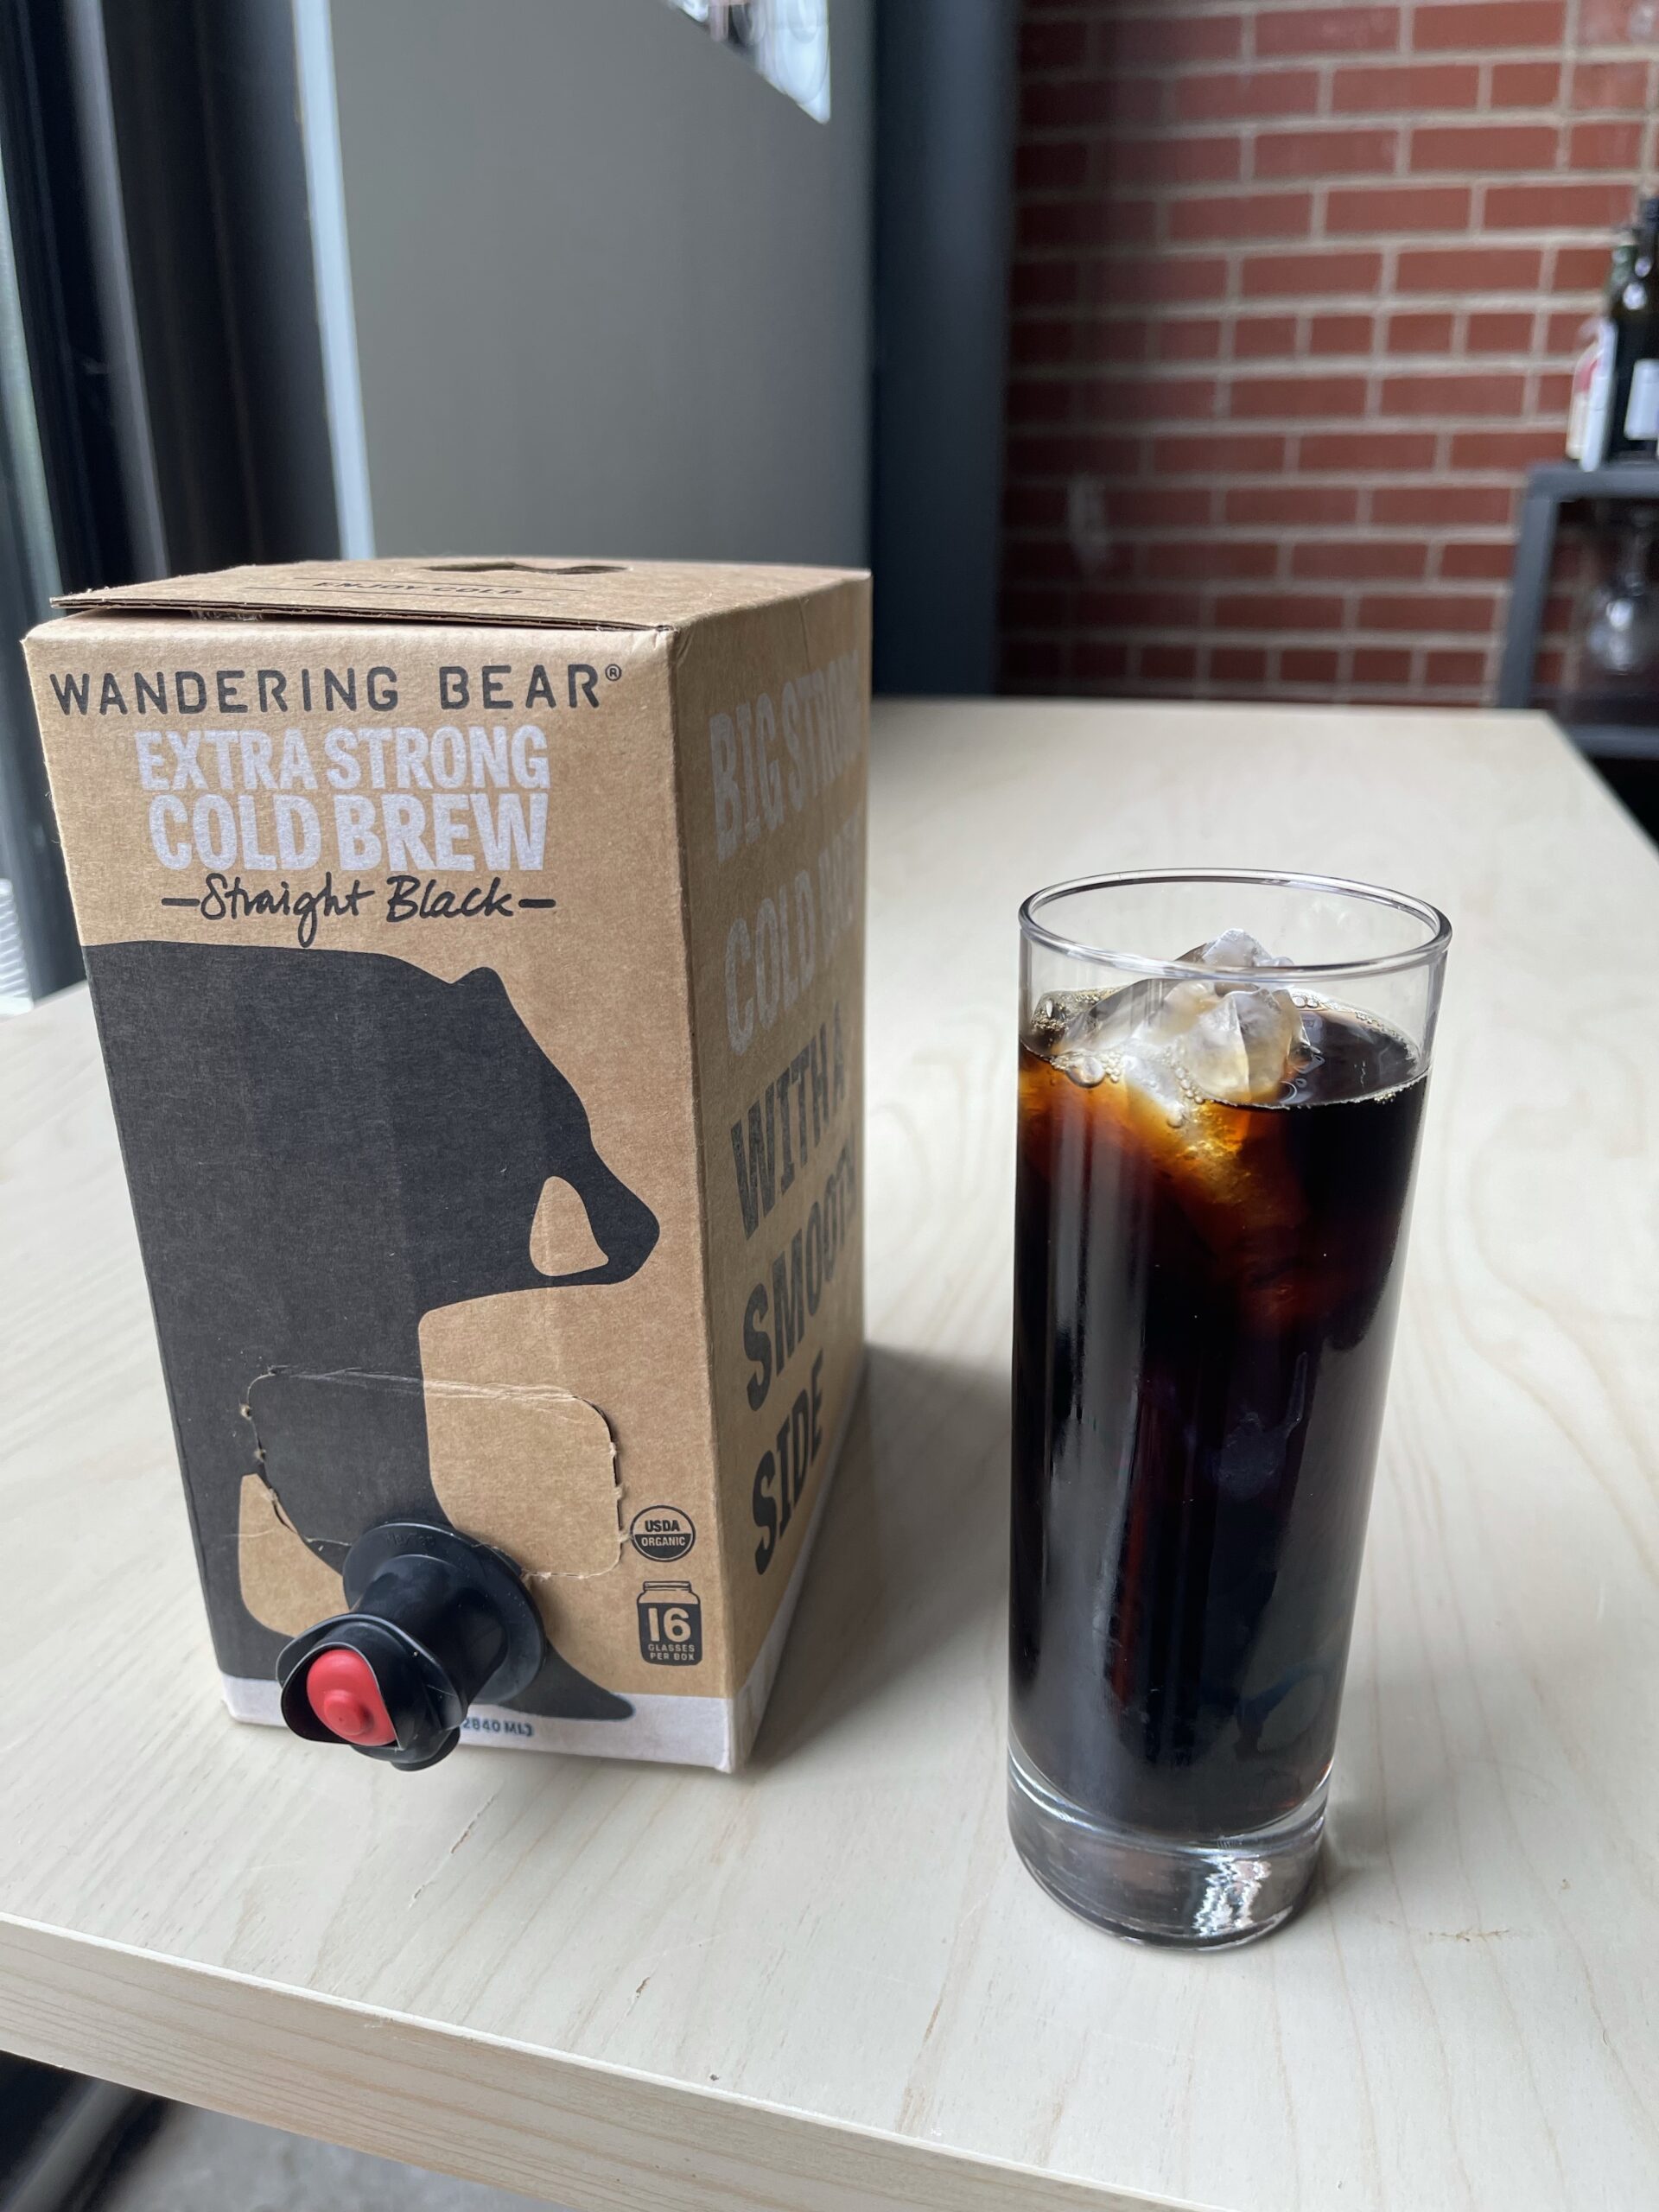  
Coffee Review: Café en caja de oso errante